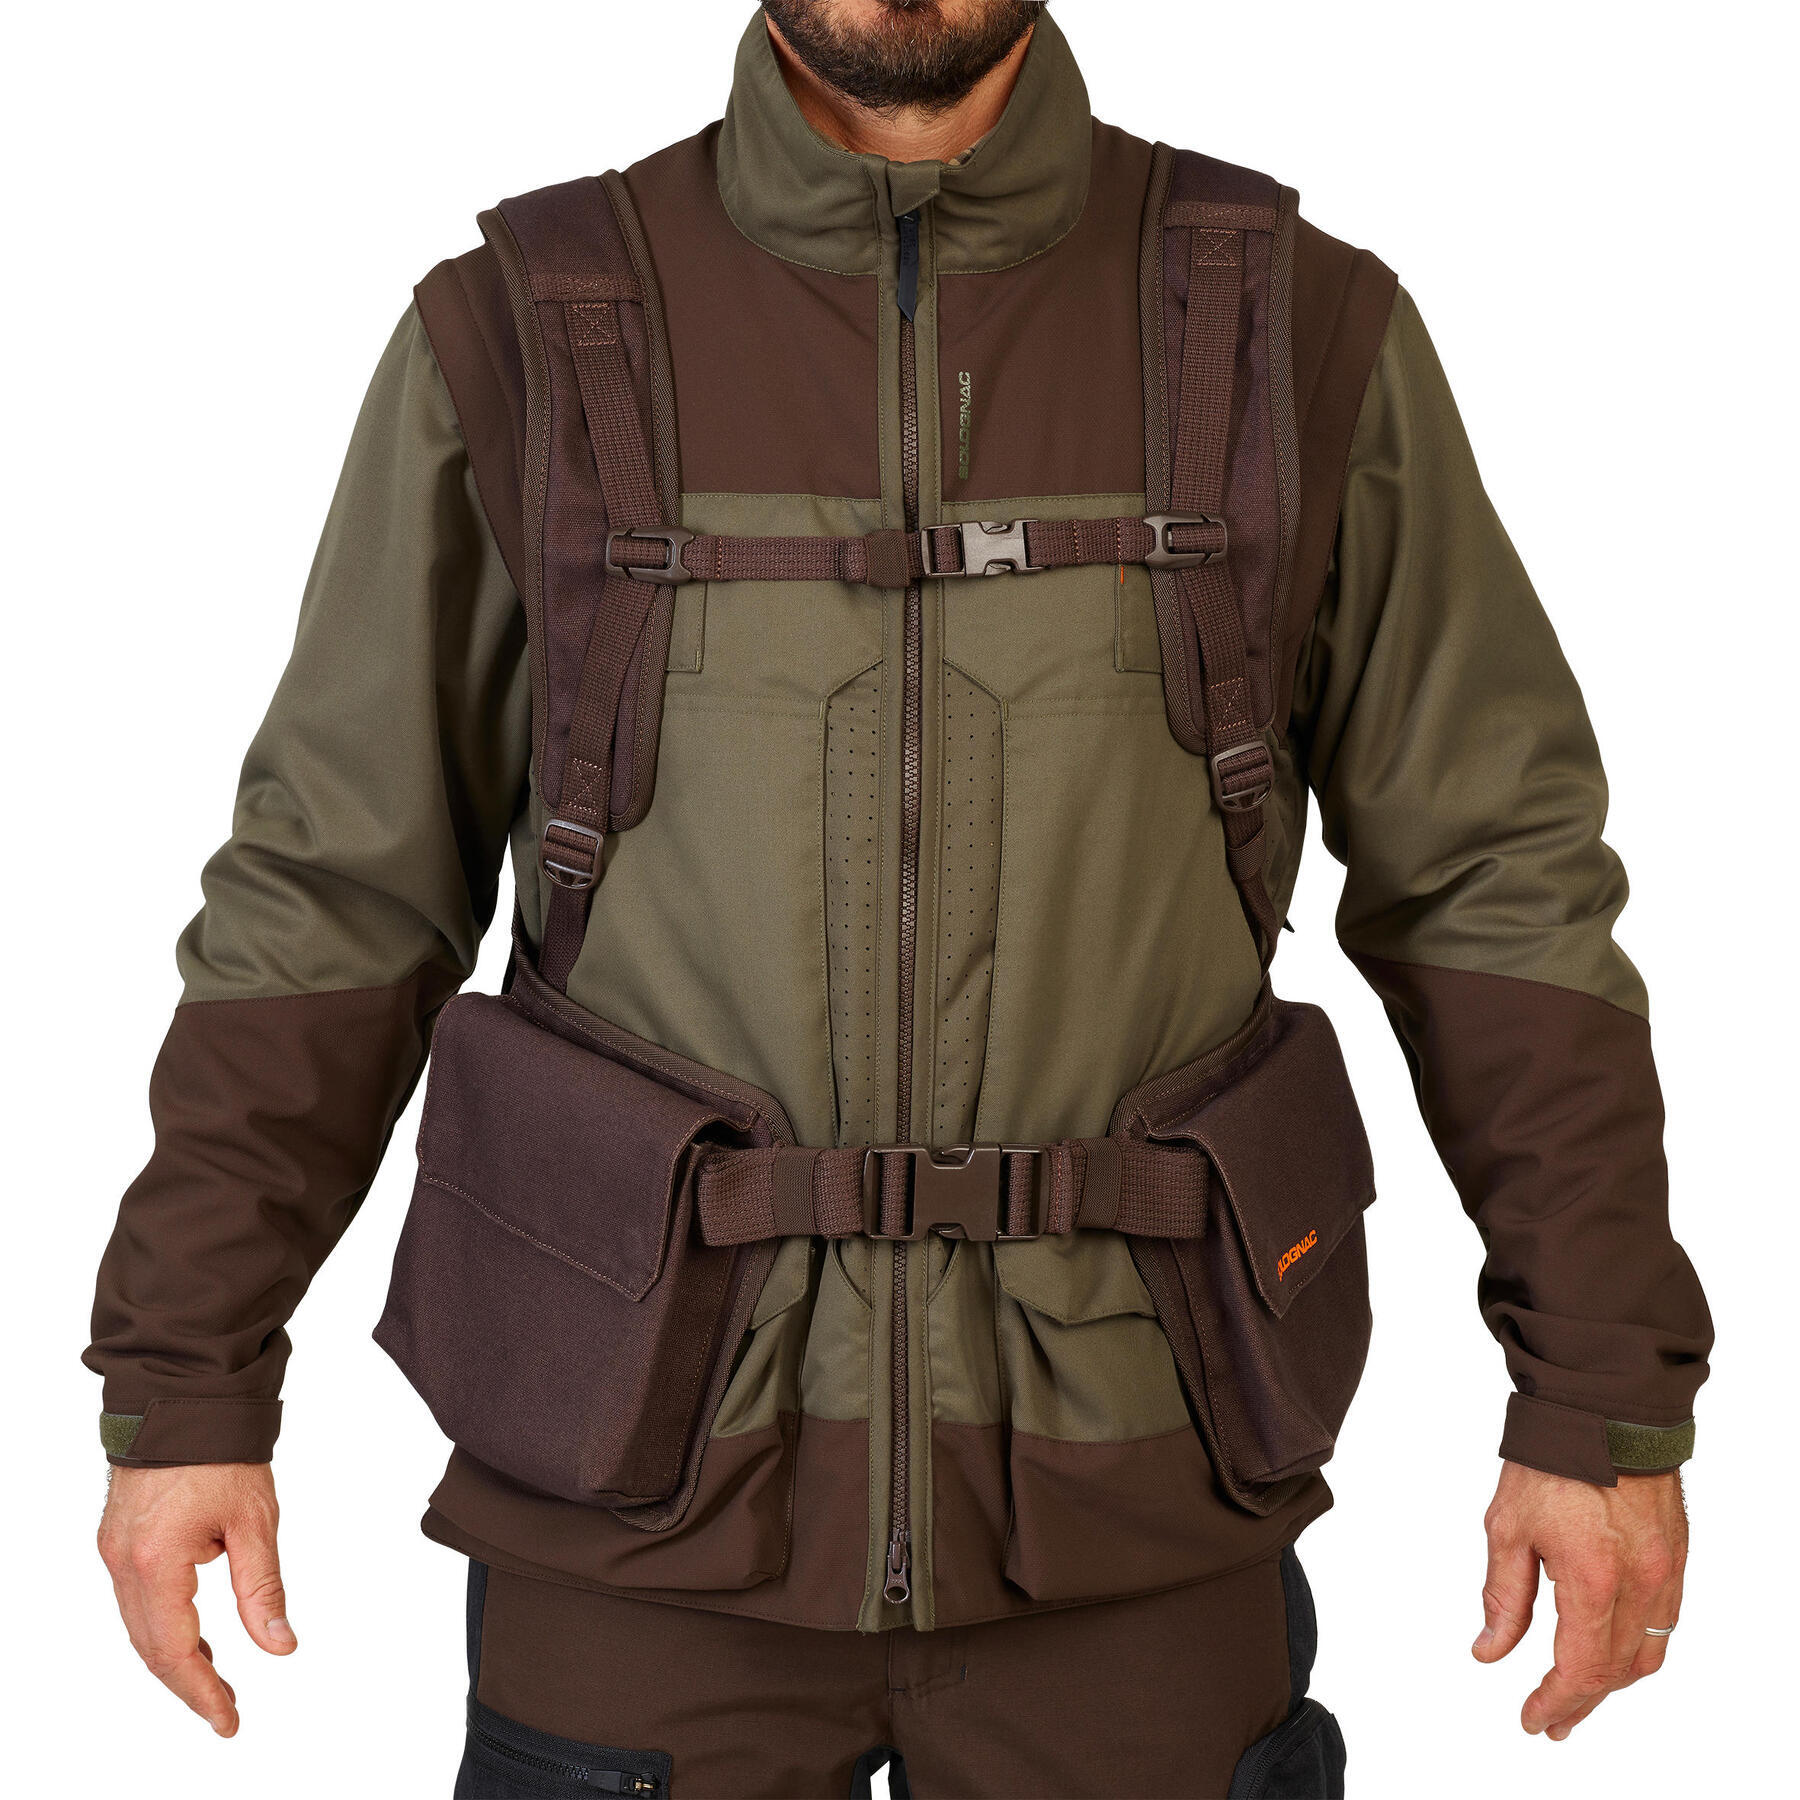 Refurbished Mens Hunting Resistant Waistcoat - 900 brown - C Grade 3/7